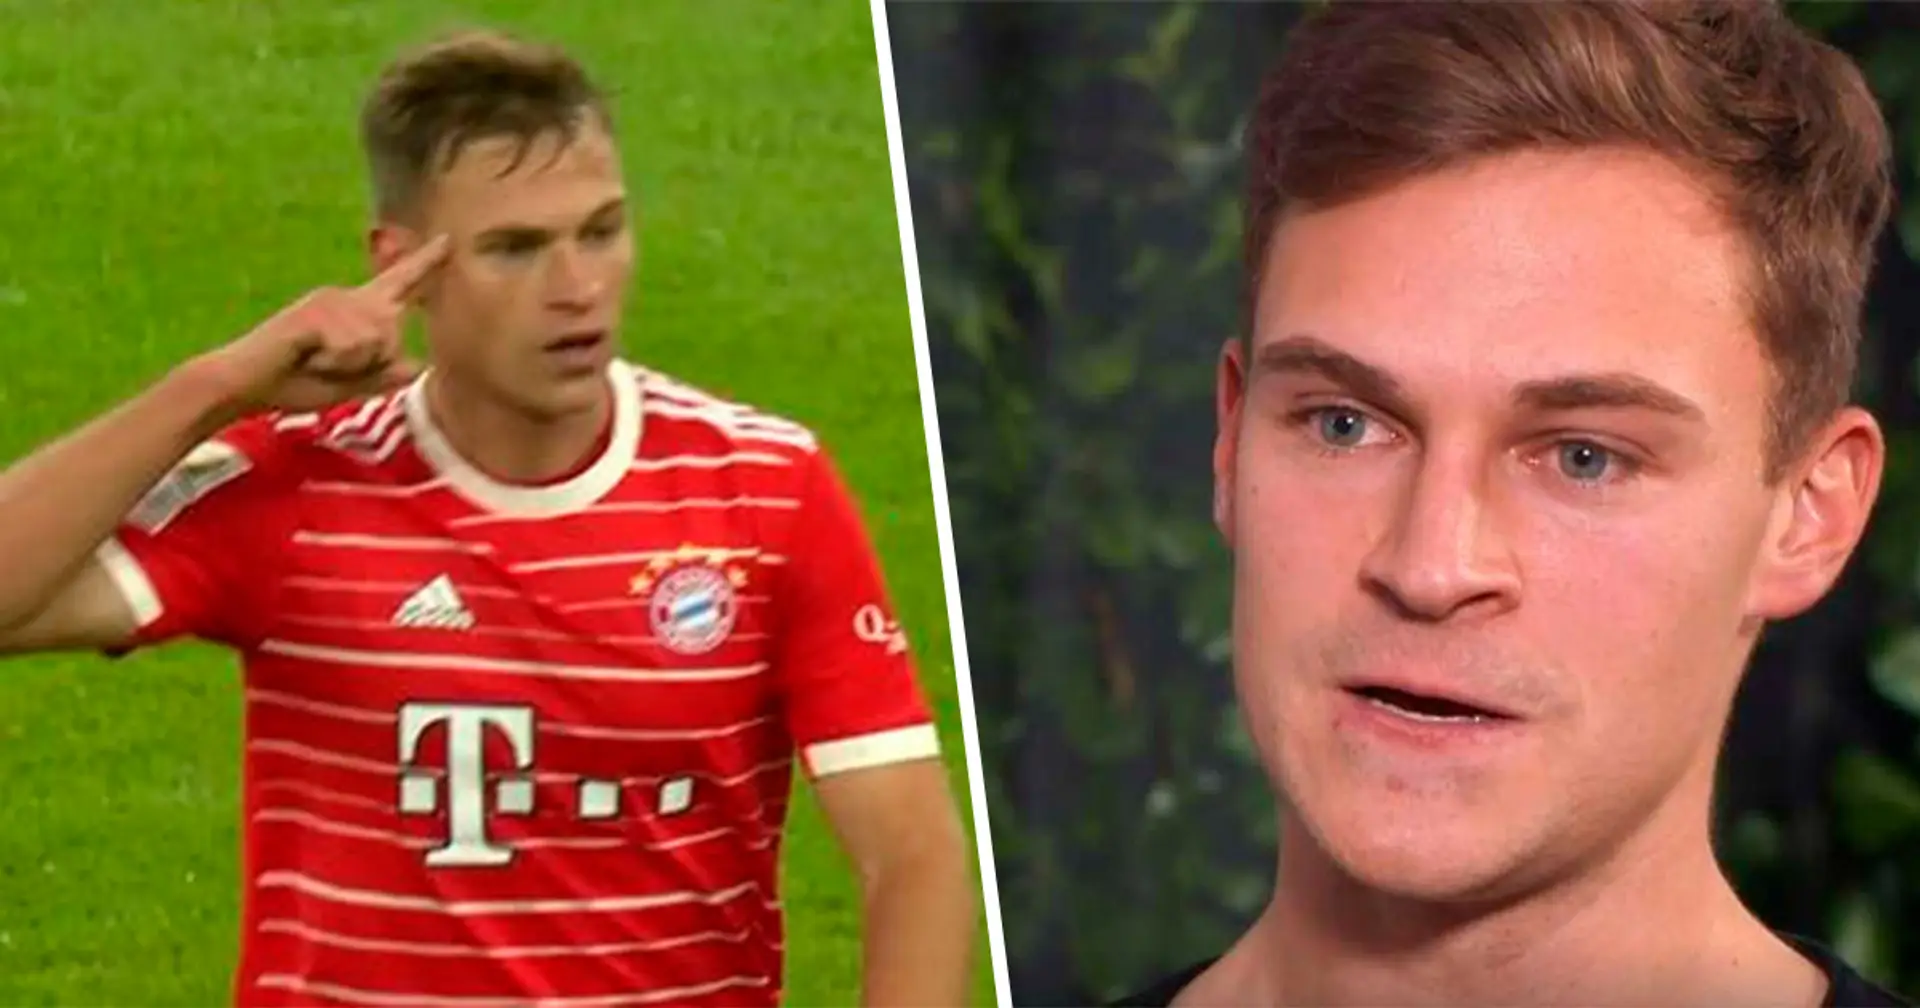 "Sobald er in die Kabine kommt, ist er zu 100 Prozent auf Strom": Ex-Bayern-Spieler bestätigt die These, dass Kimmich ein Mentalitätsmonster ist